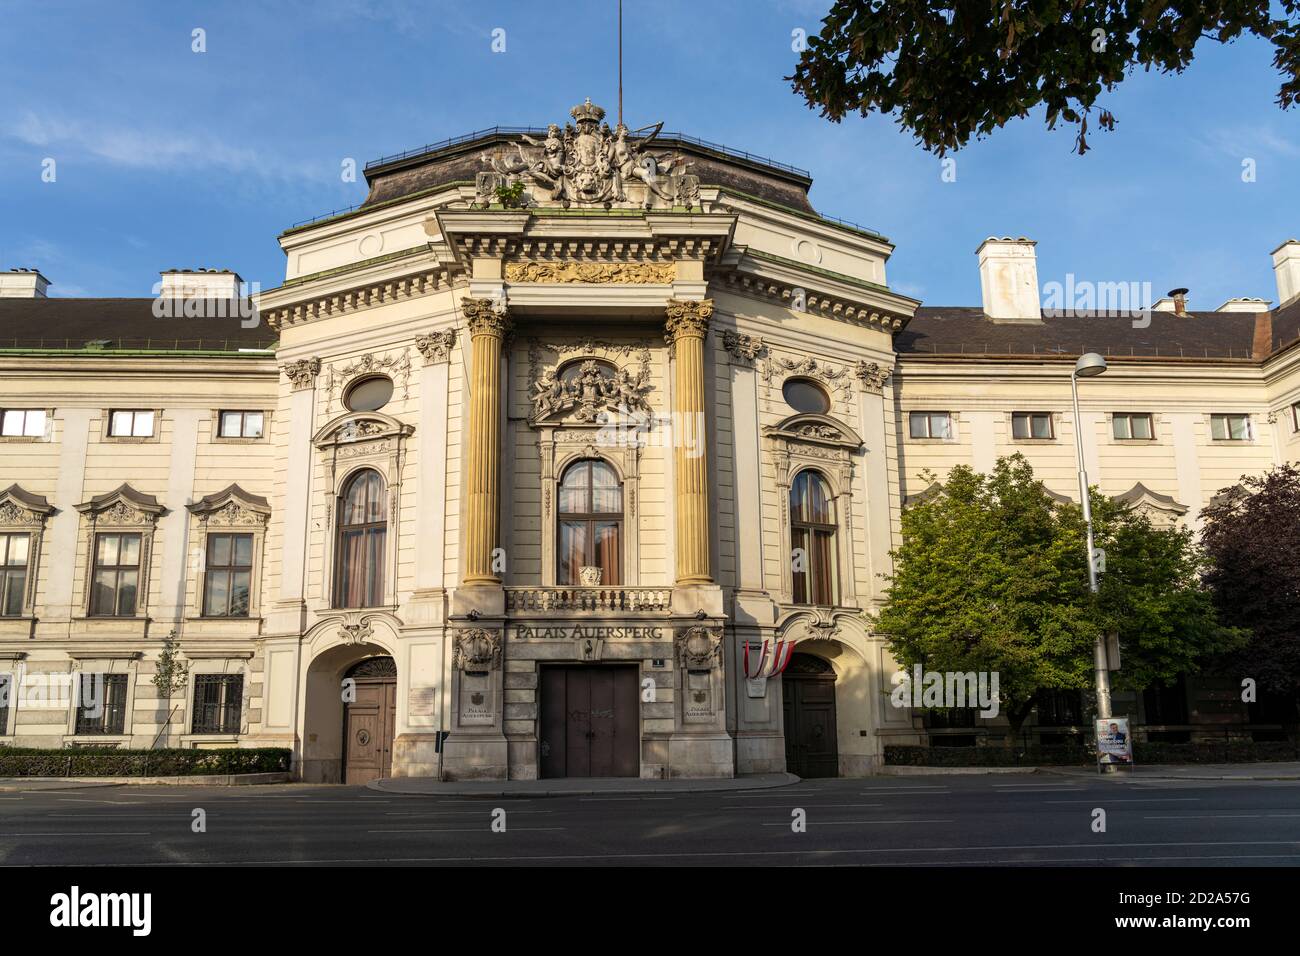 DAS barocke Palais Auersperg à Vienne, Österreich, Europa | le Palais baroque Auersperg à Vienne, Autriche, Europe Banque D'Images